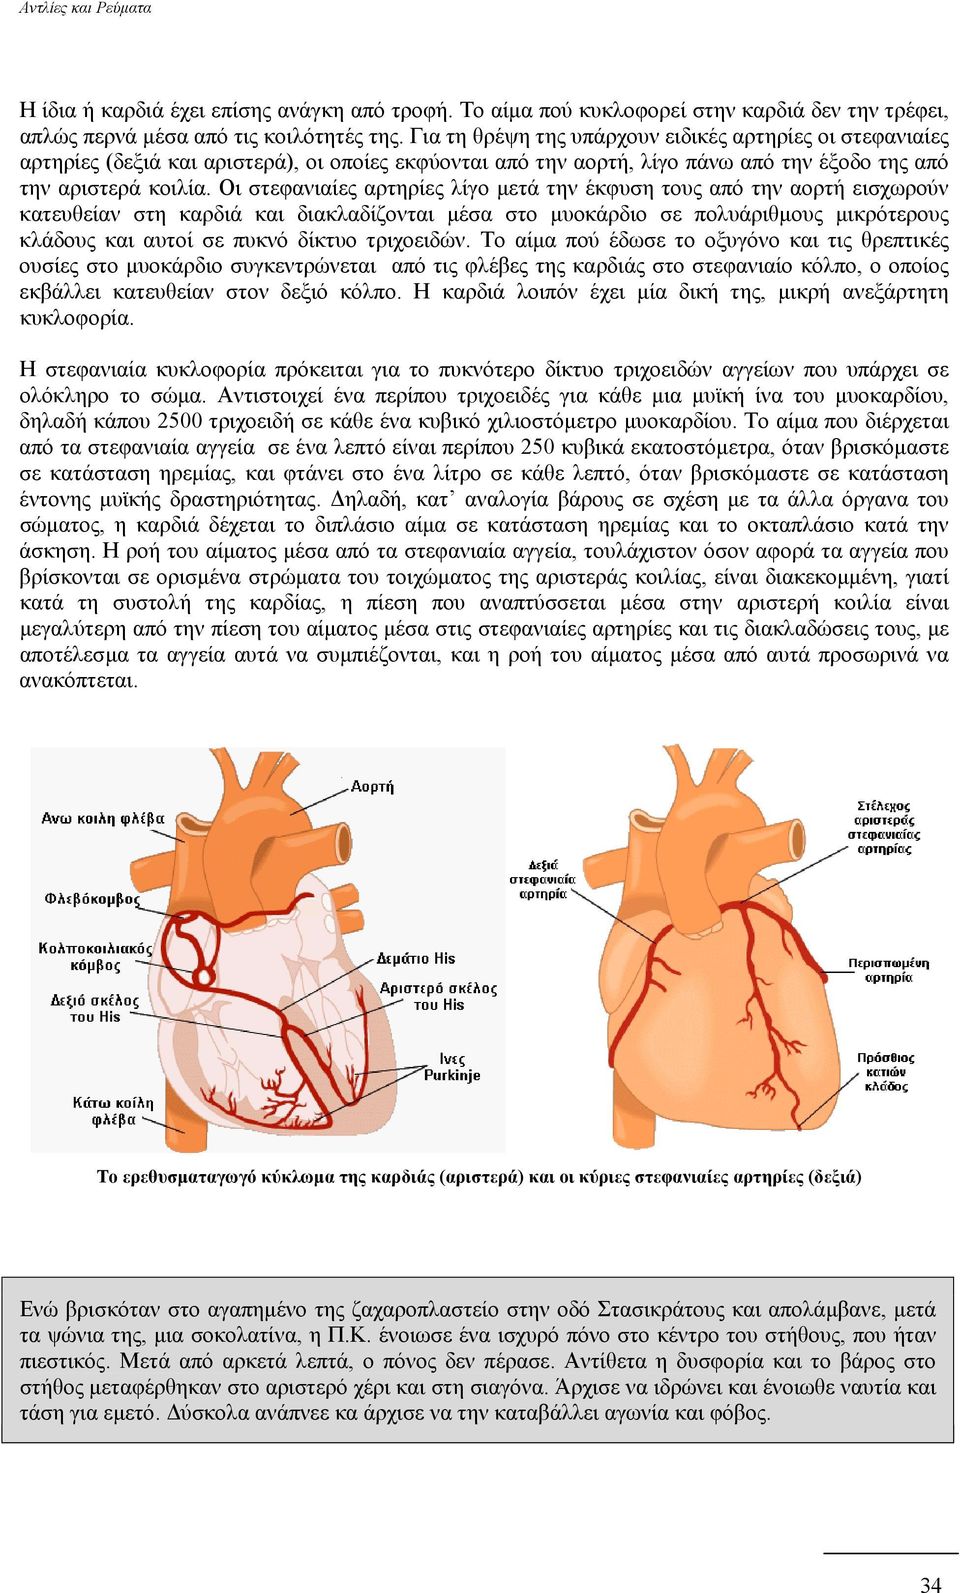 Οι στεφανιαίες αρτηρίες λίγο µετά την έκφυση τους από την αορτή εισχωρούν κατευθείαν στη καρδιά και διακλαδίζονται µέσα στο µυοκάρδιο σε πολυάριθµους µικρότερους κλάδους και αυτοί σε πυκνό δίκτυο